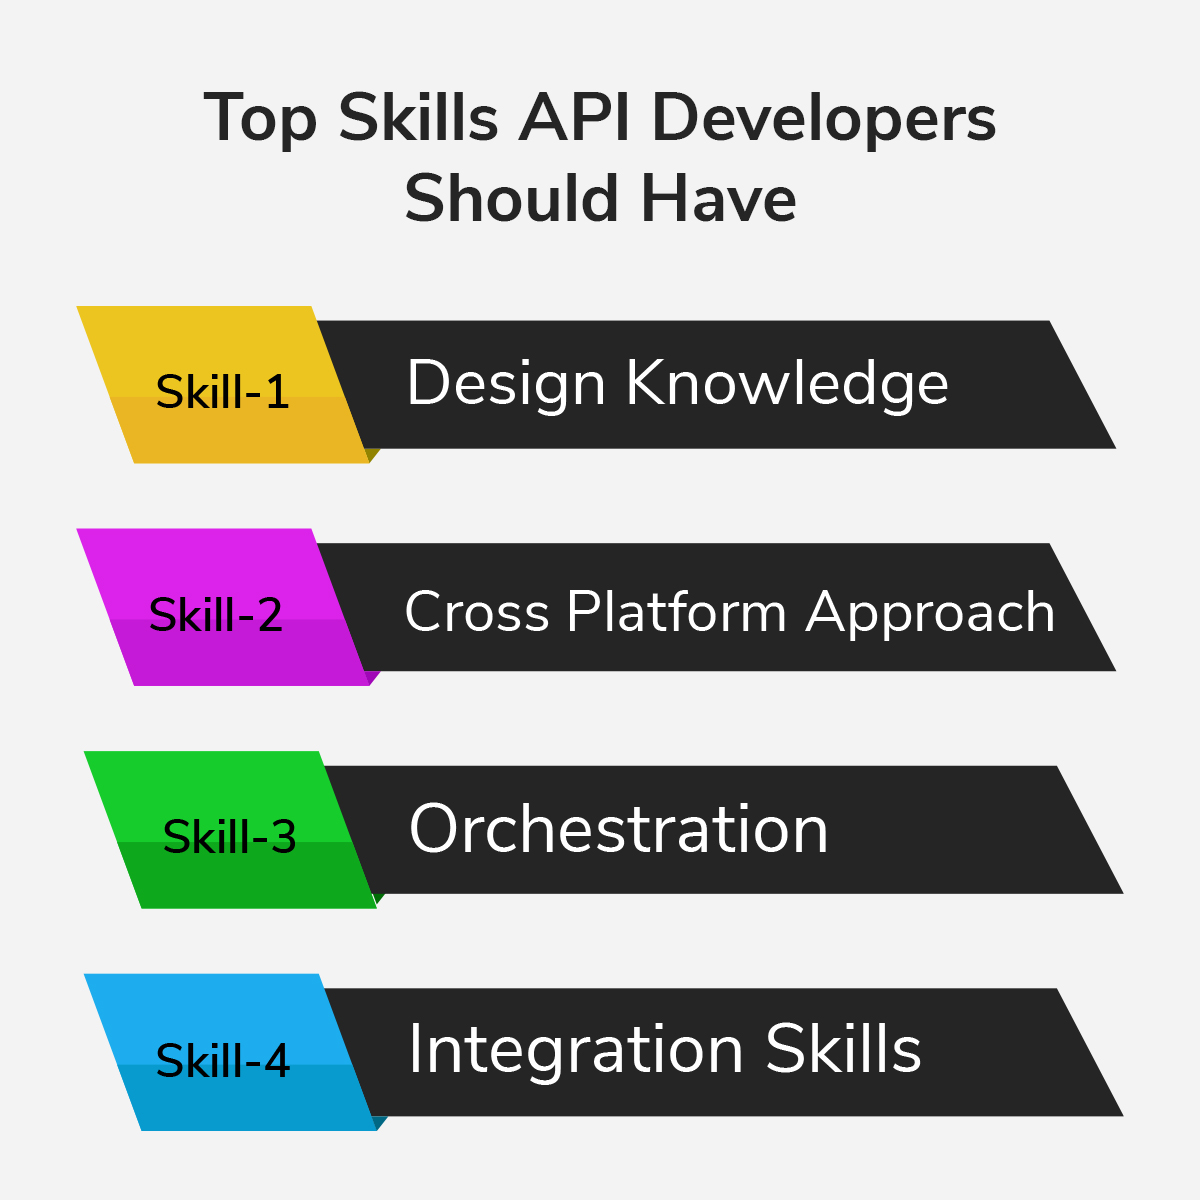 Top Skills API Developers Should Have